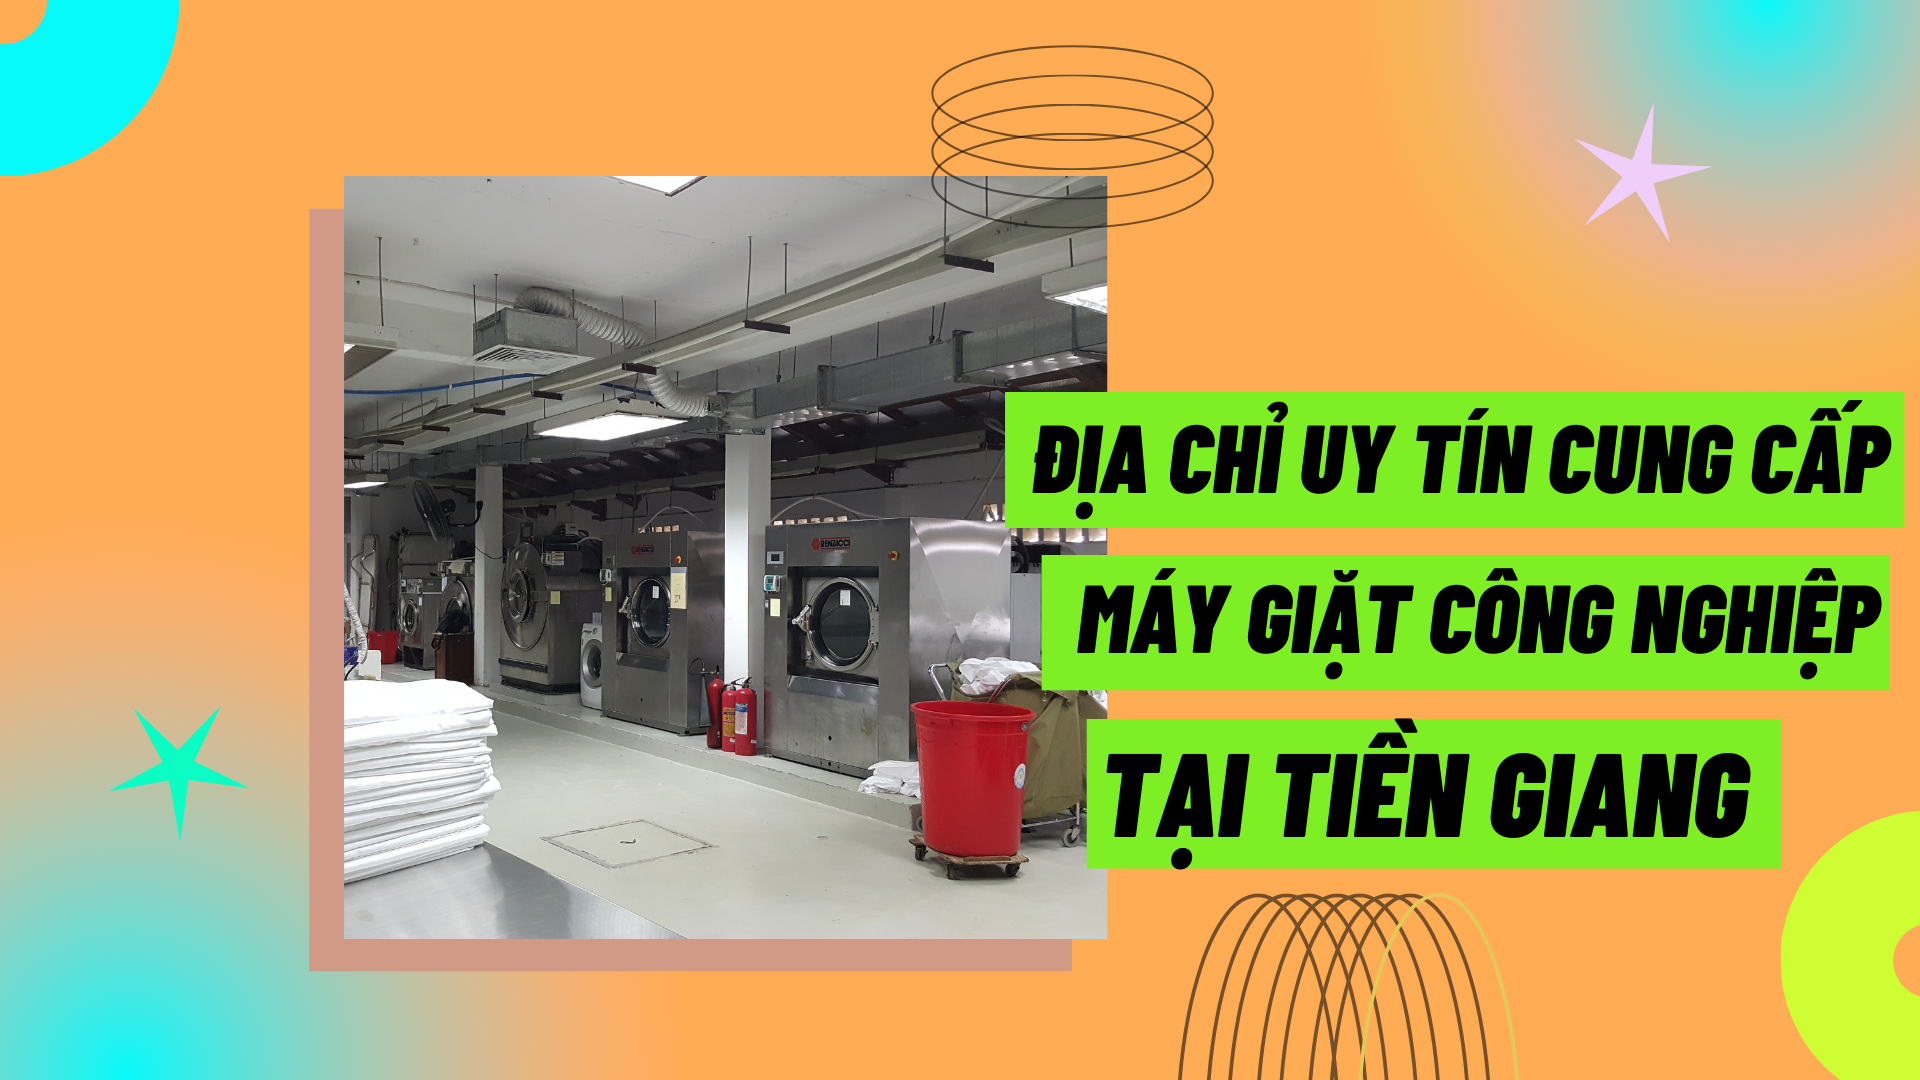 Địa chỉ uy tín cung cấp máy giặt công nghiệp tại Tiền Giang